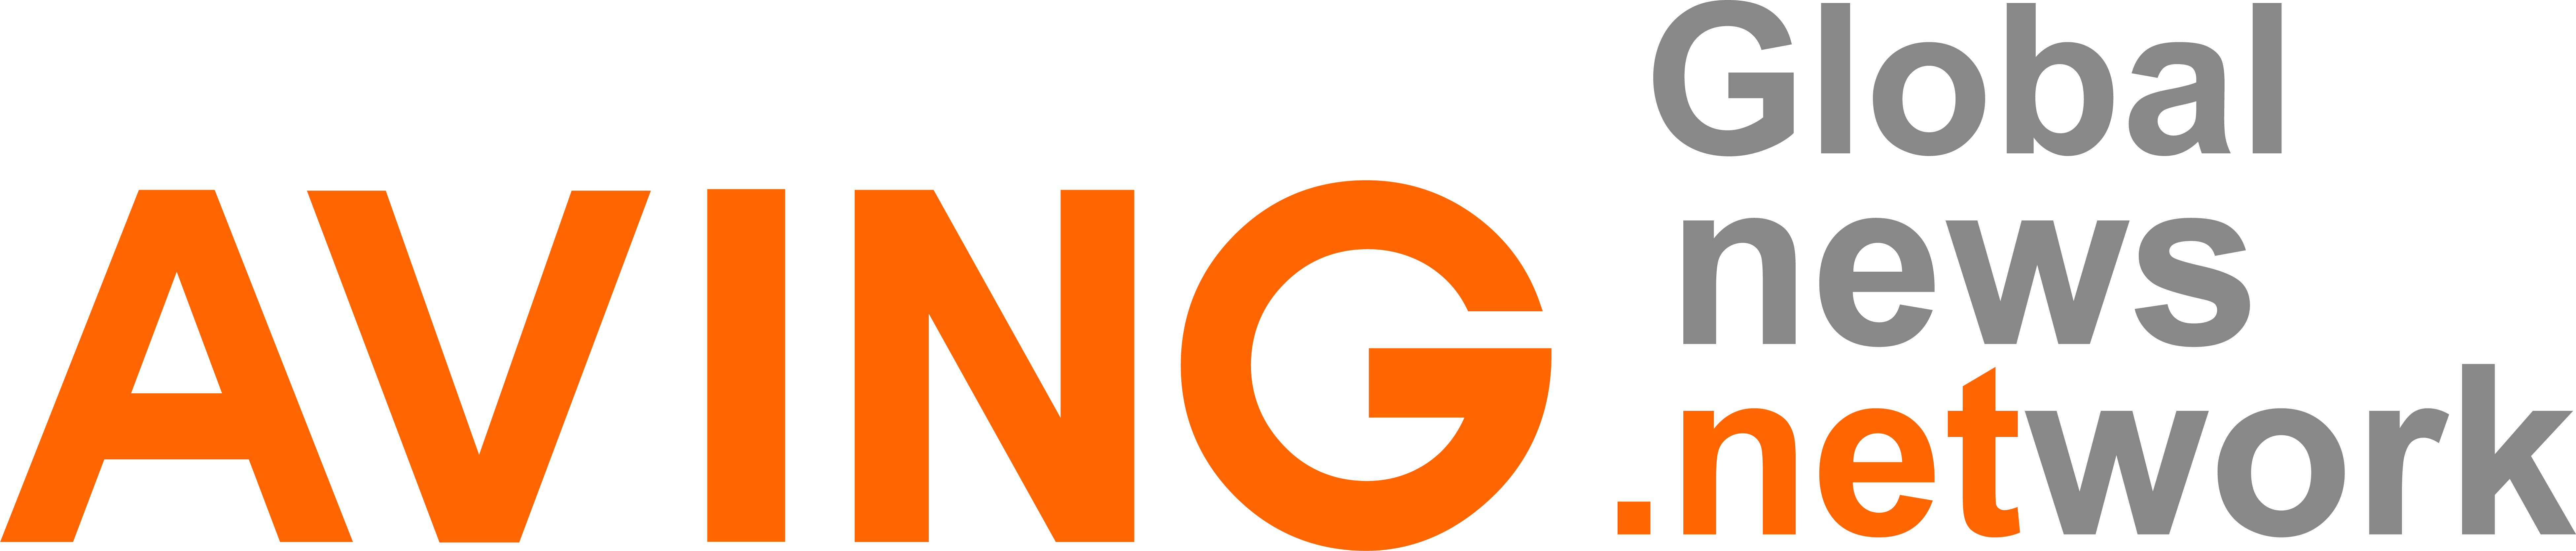 AVING NEWS Logo